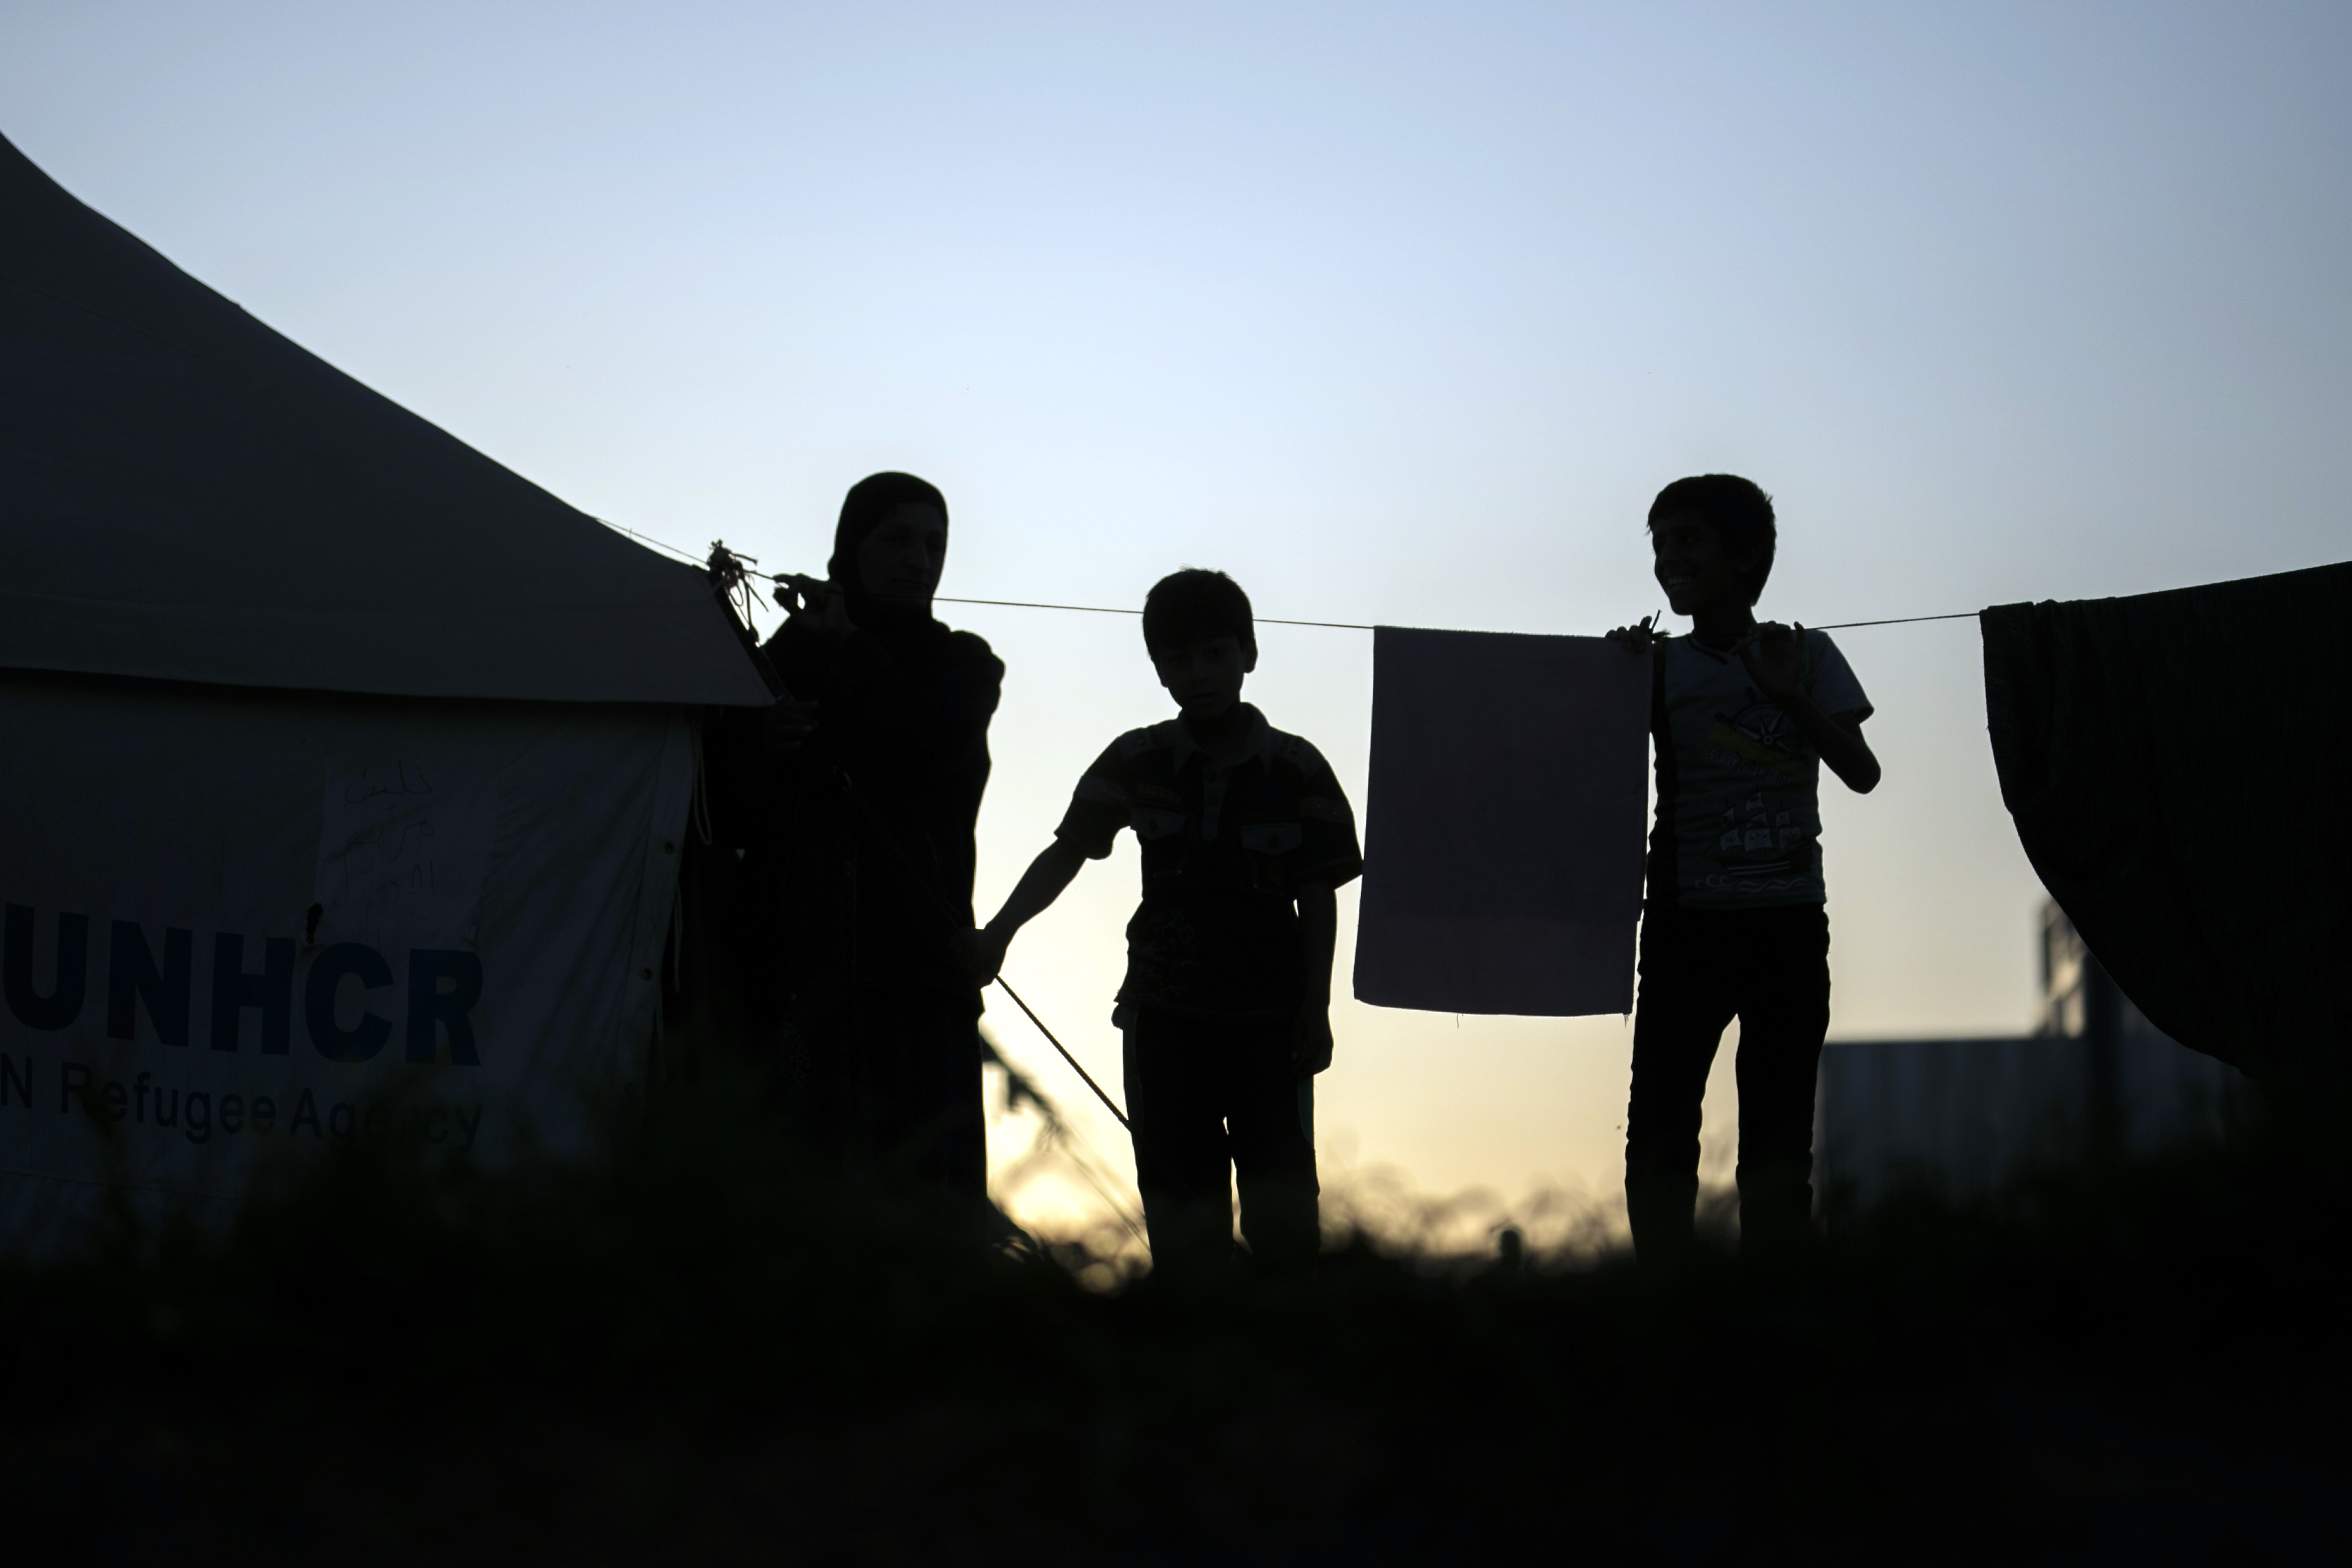 Ei­ne sy­ri­sche Fa­mi­lie in ei­nem Flücht­lings­la­ger an der tür­kisch-sy­ri­schen Gren­ze bei Ni­zip